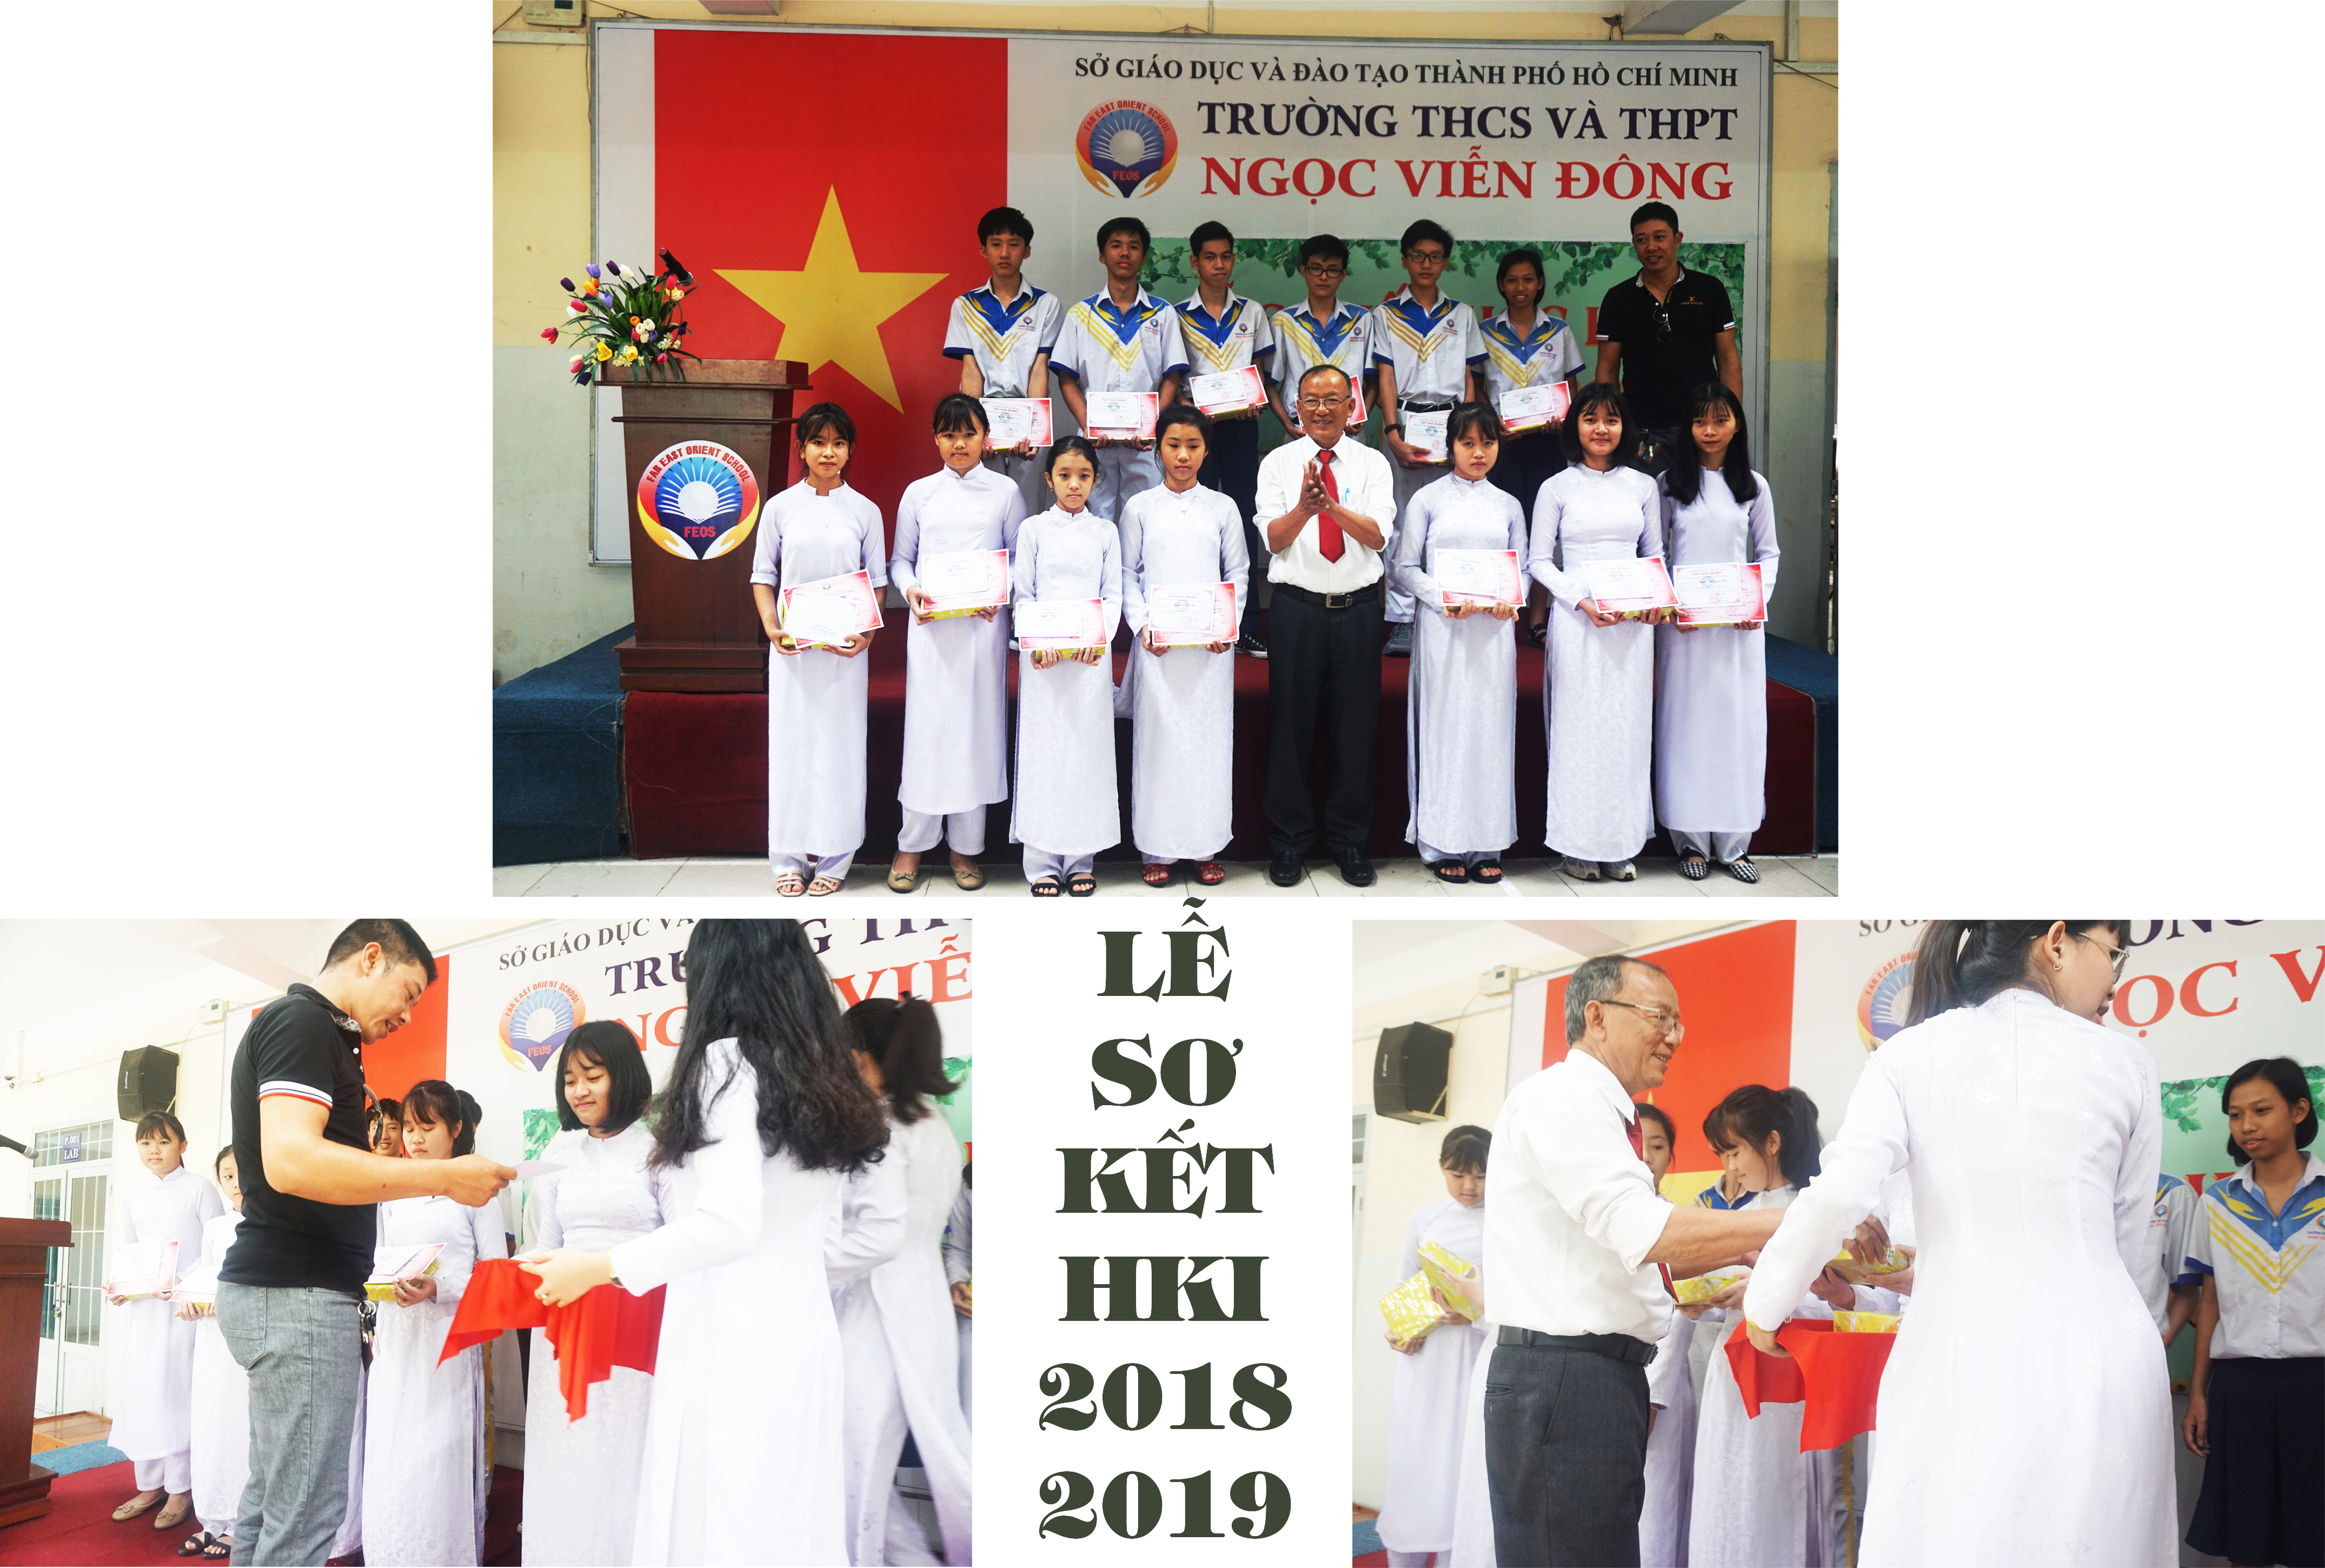 Phát thưởng cho học sinh Giỏi trong lễ sơ kết HKI 2018 - 2019 trường THCS và THPT Ngọc Viễn Đông